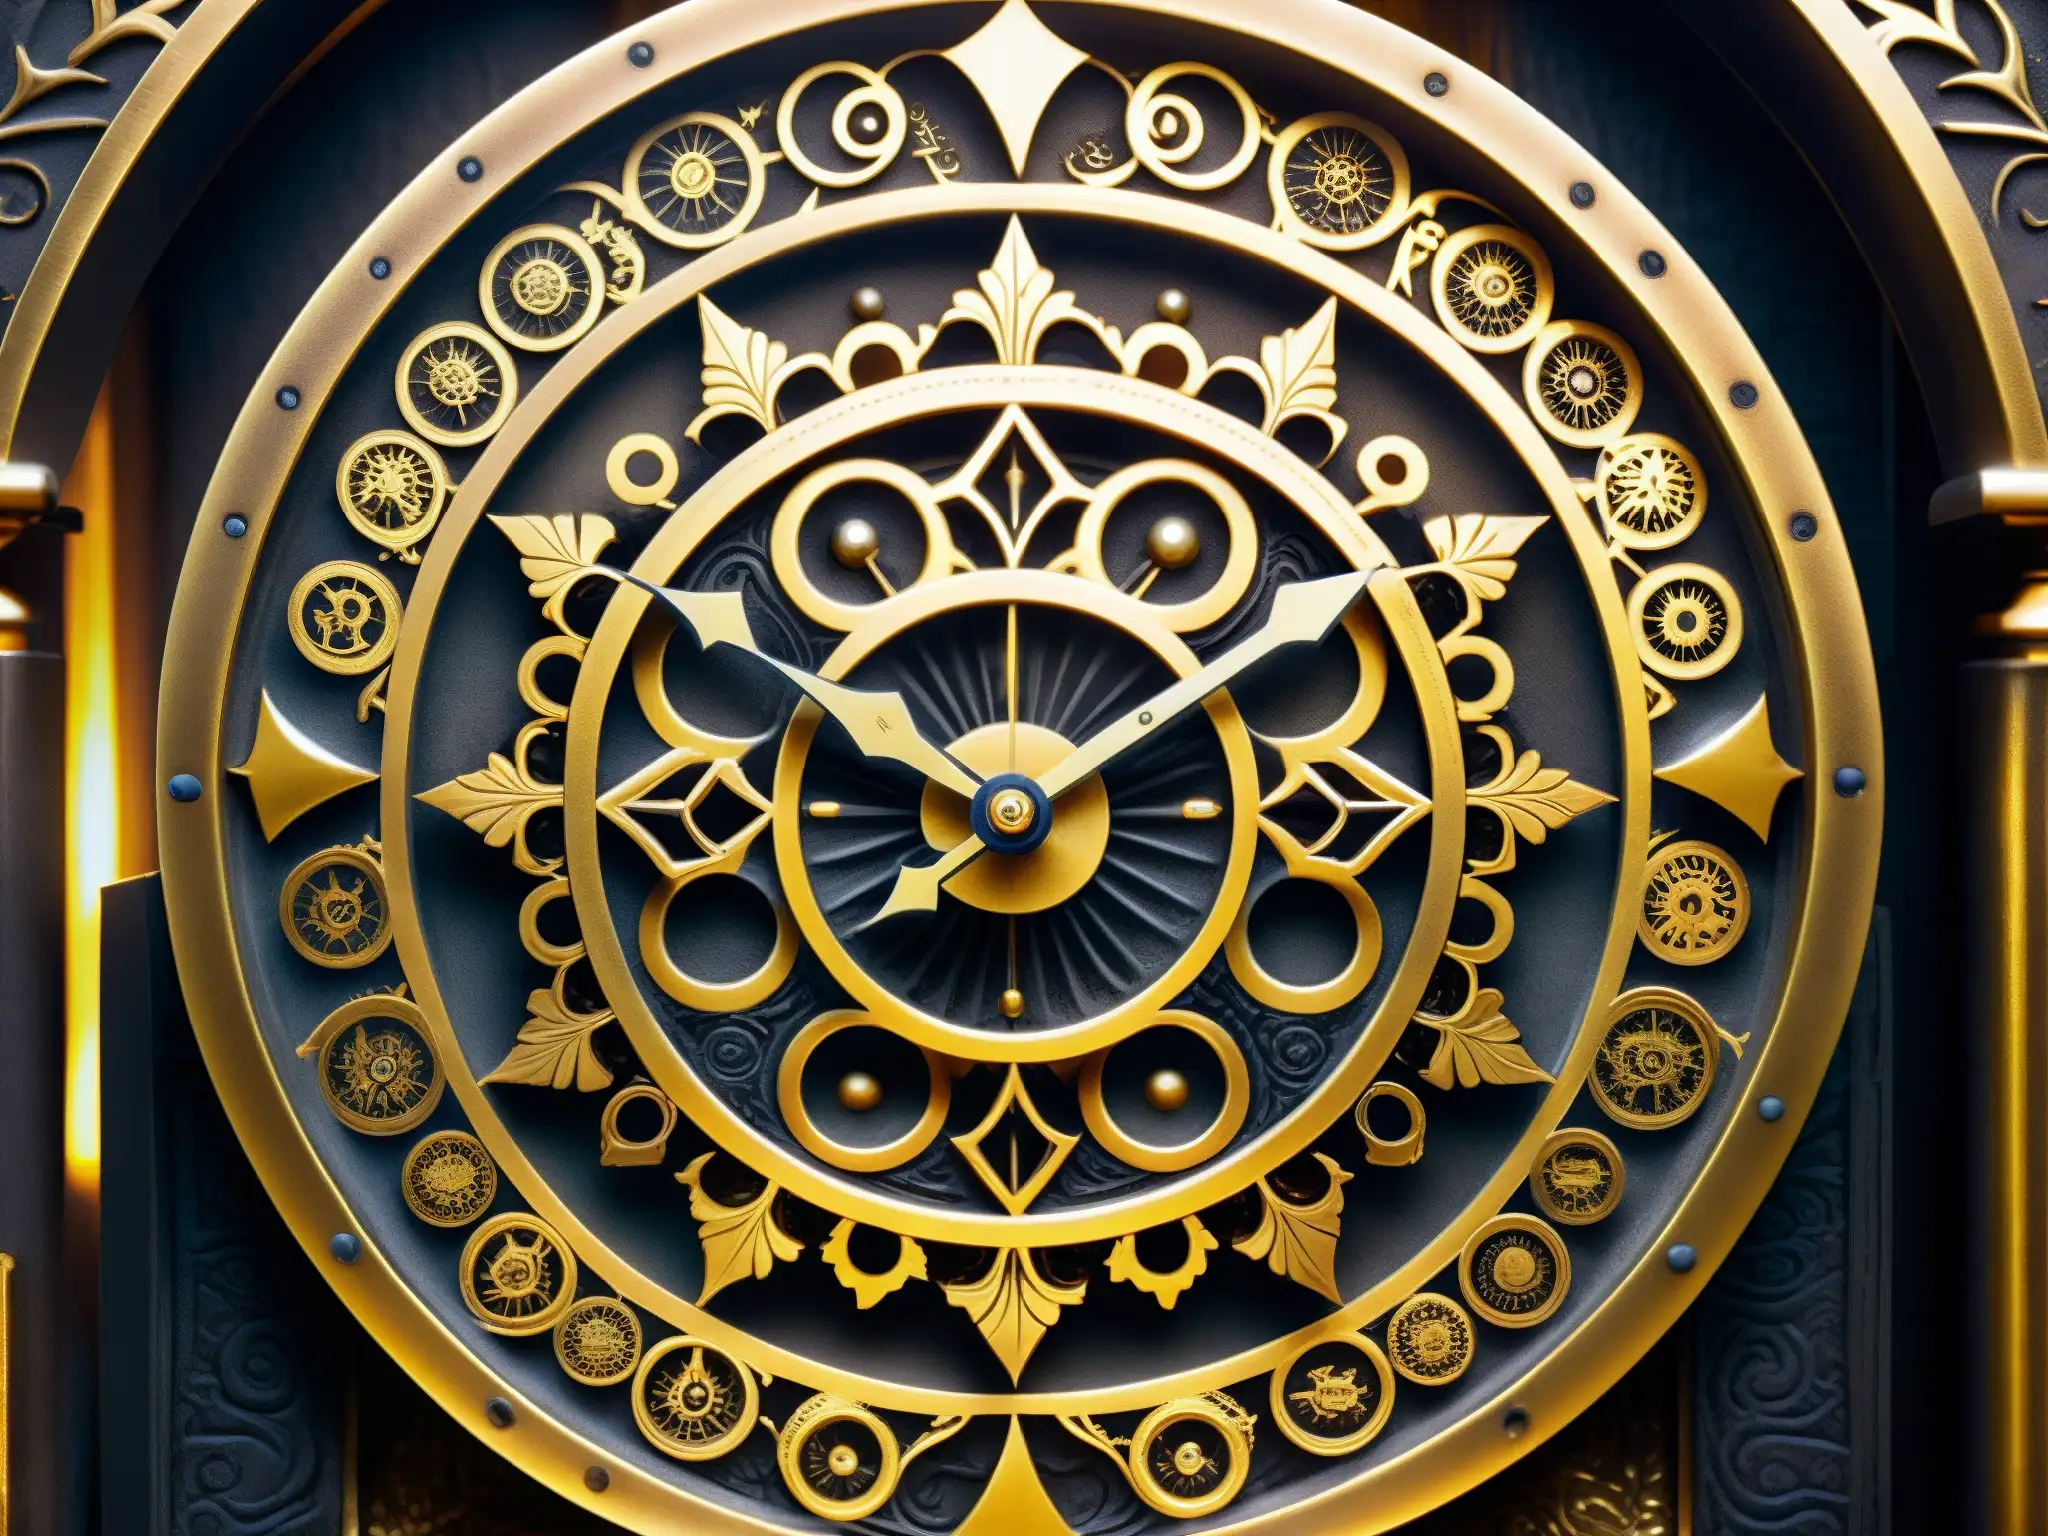 El Reloj Maldito de Myojin, con intrincados grabados dorados, símbolos misteriosos y un ambiente enigmático en un templo olvidado